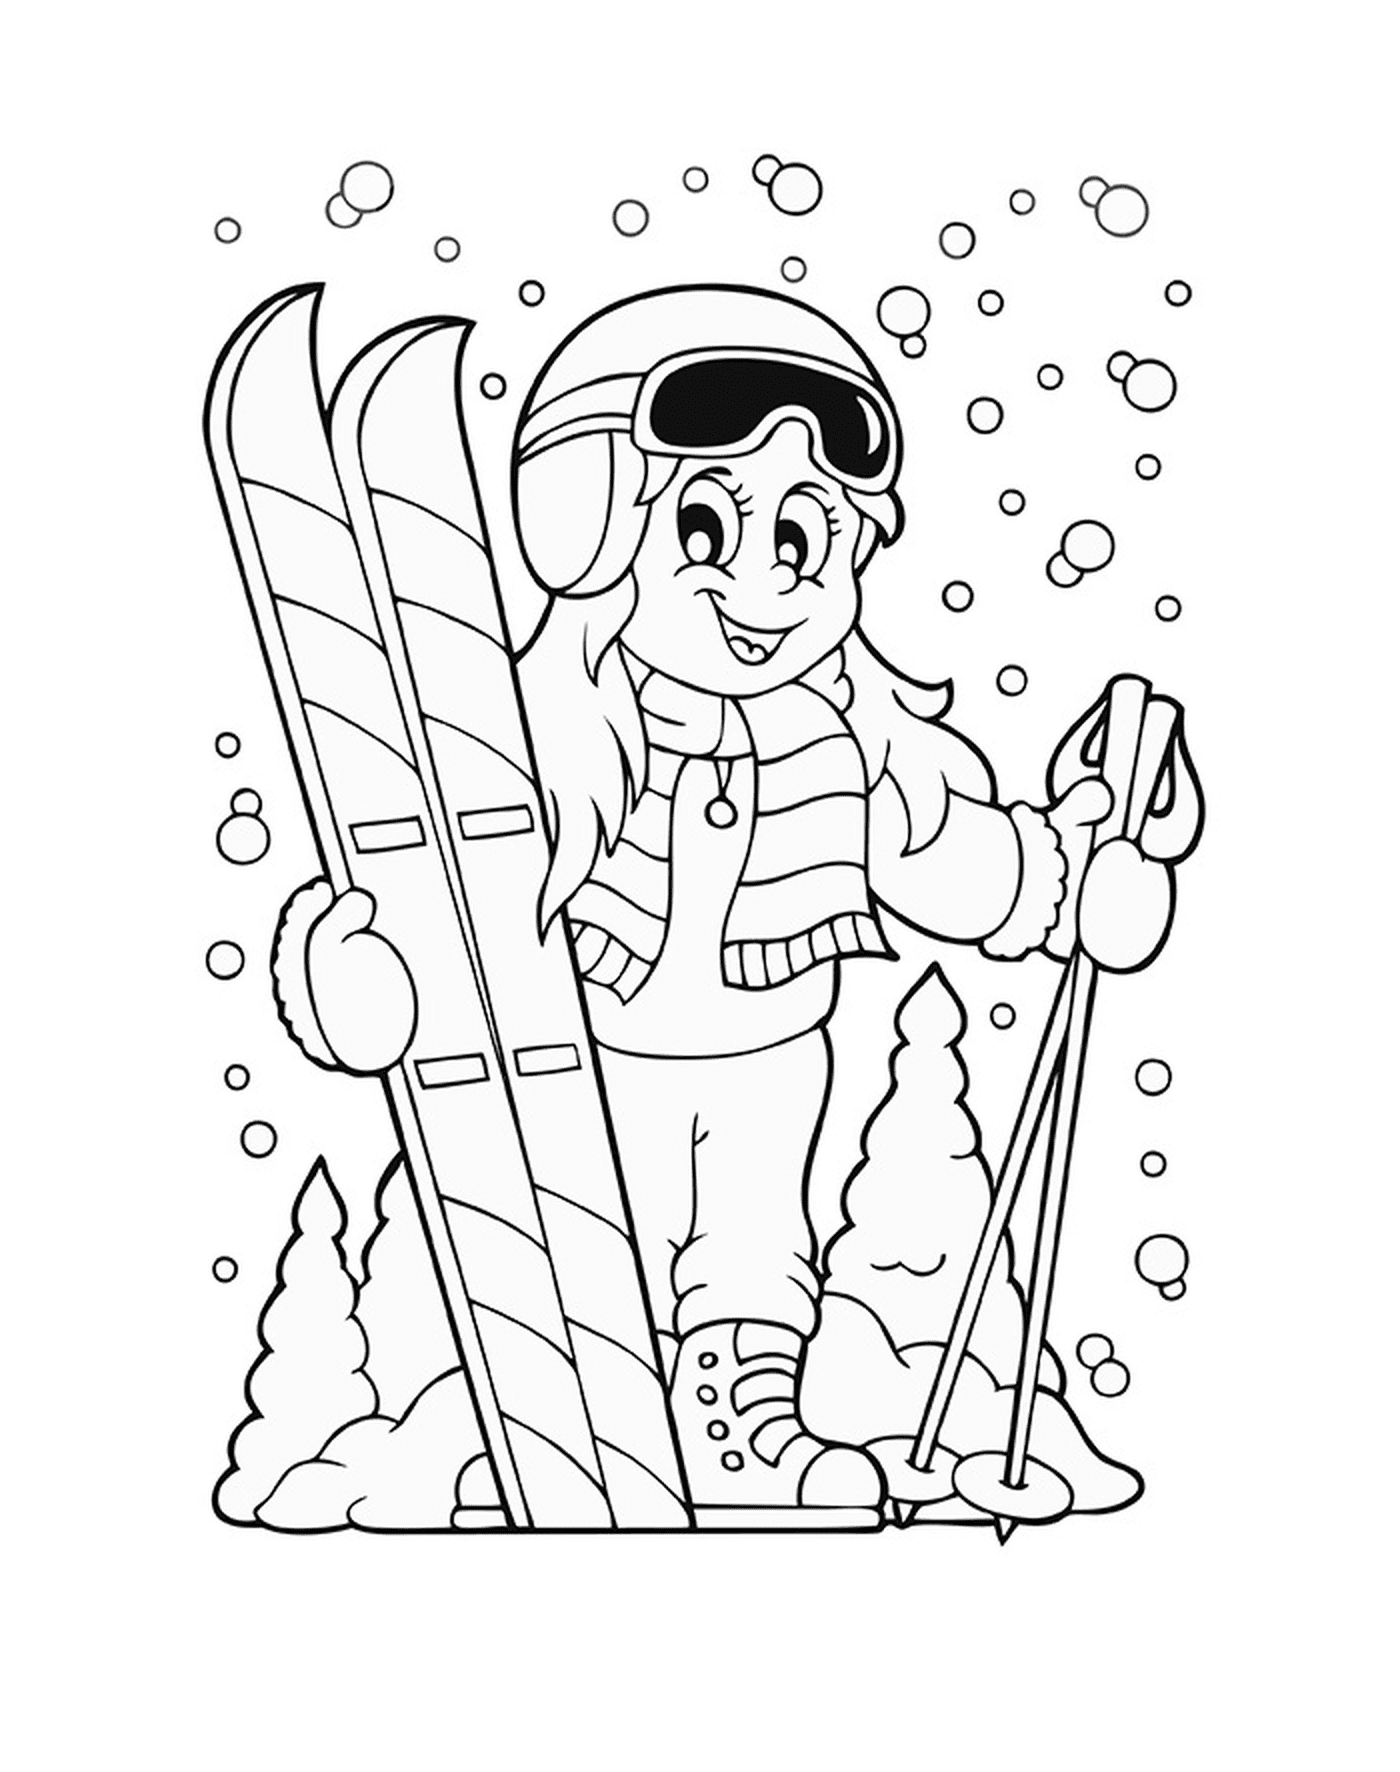  Winter sport, skiing, girl holding skis 